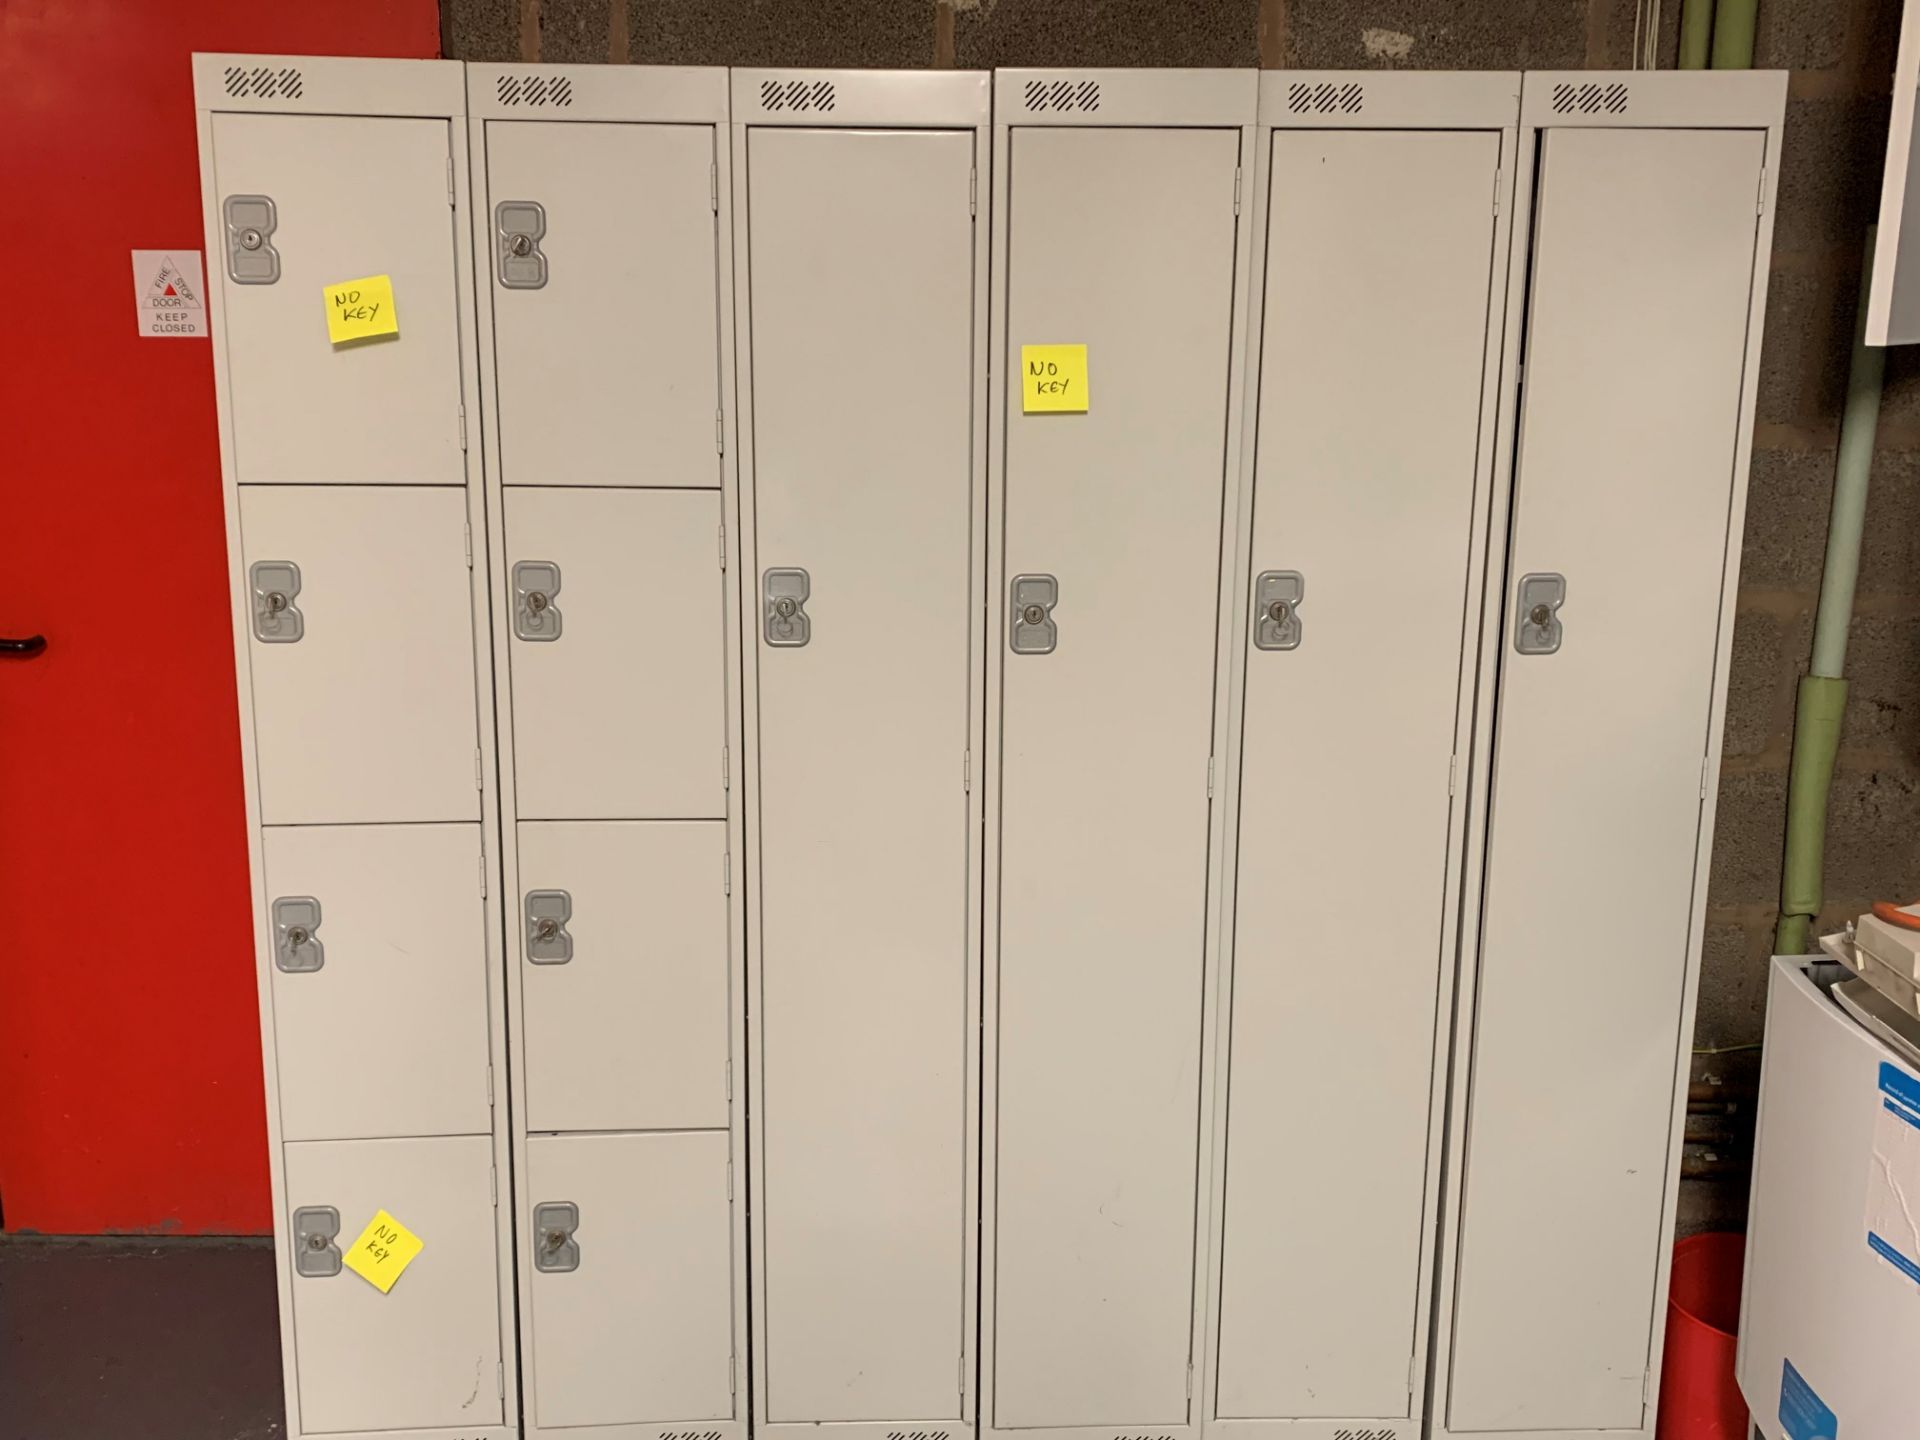 5 x Metal Lockers (3 Keys Missing, See Pics) - Each Locker 1800 x 300 x 450mm